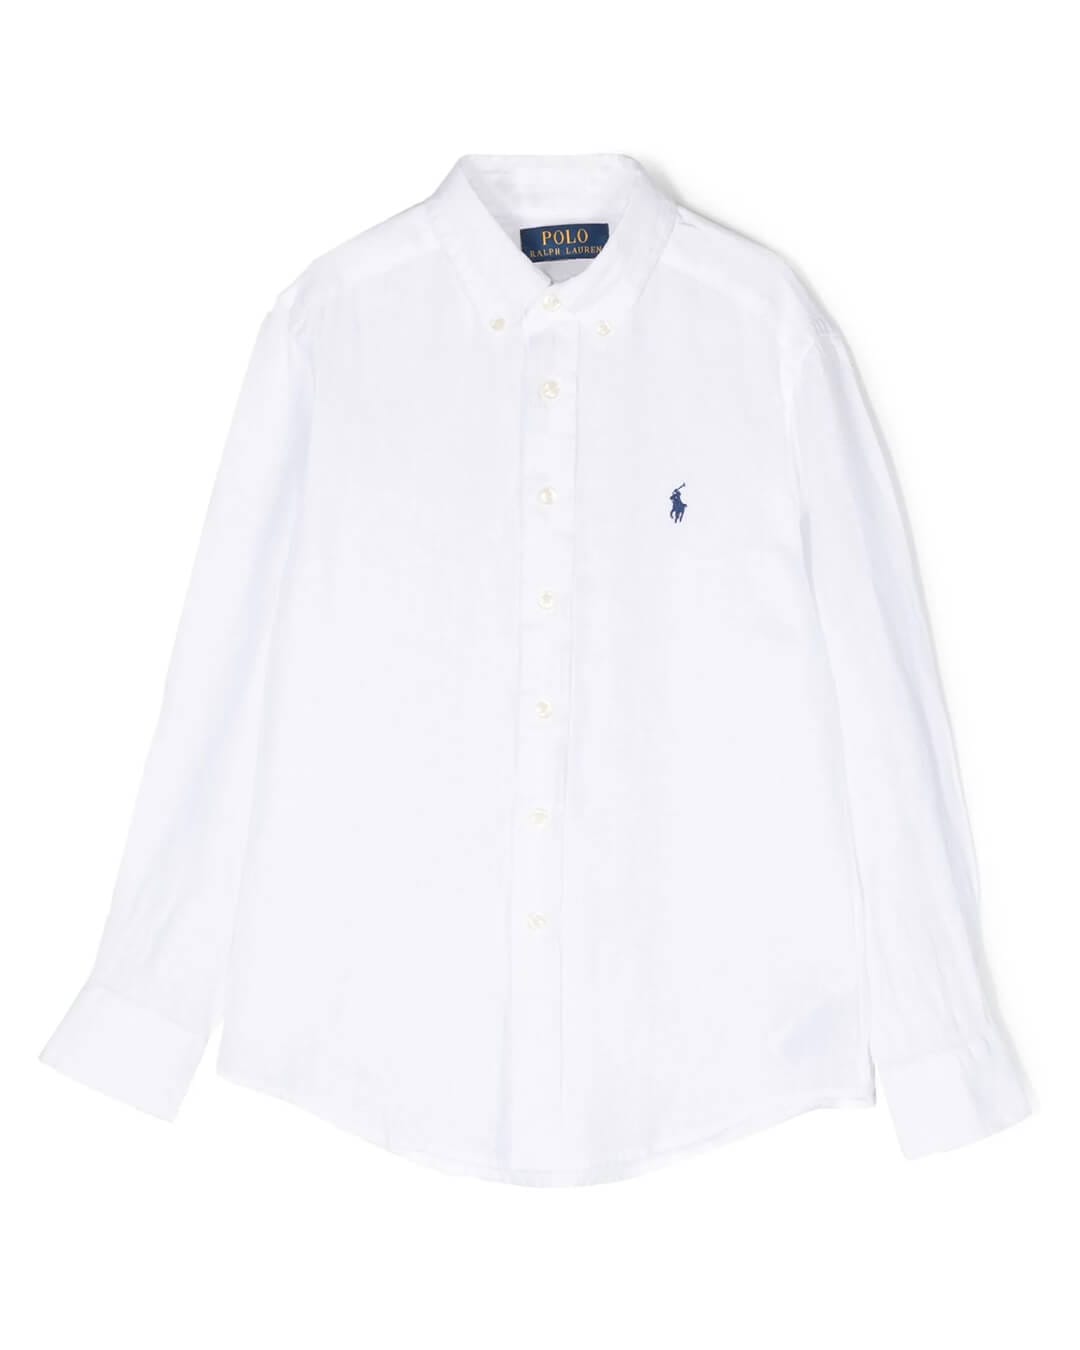 Polo Ralph Lauren T-Shirts Girls Polo Ralph Lauren White Long Sleeved Shirt